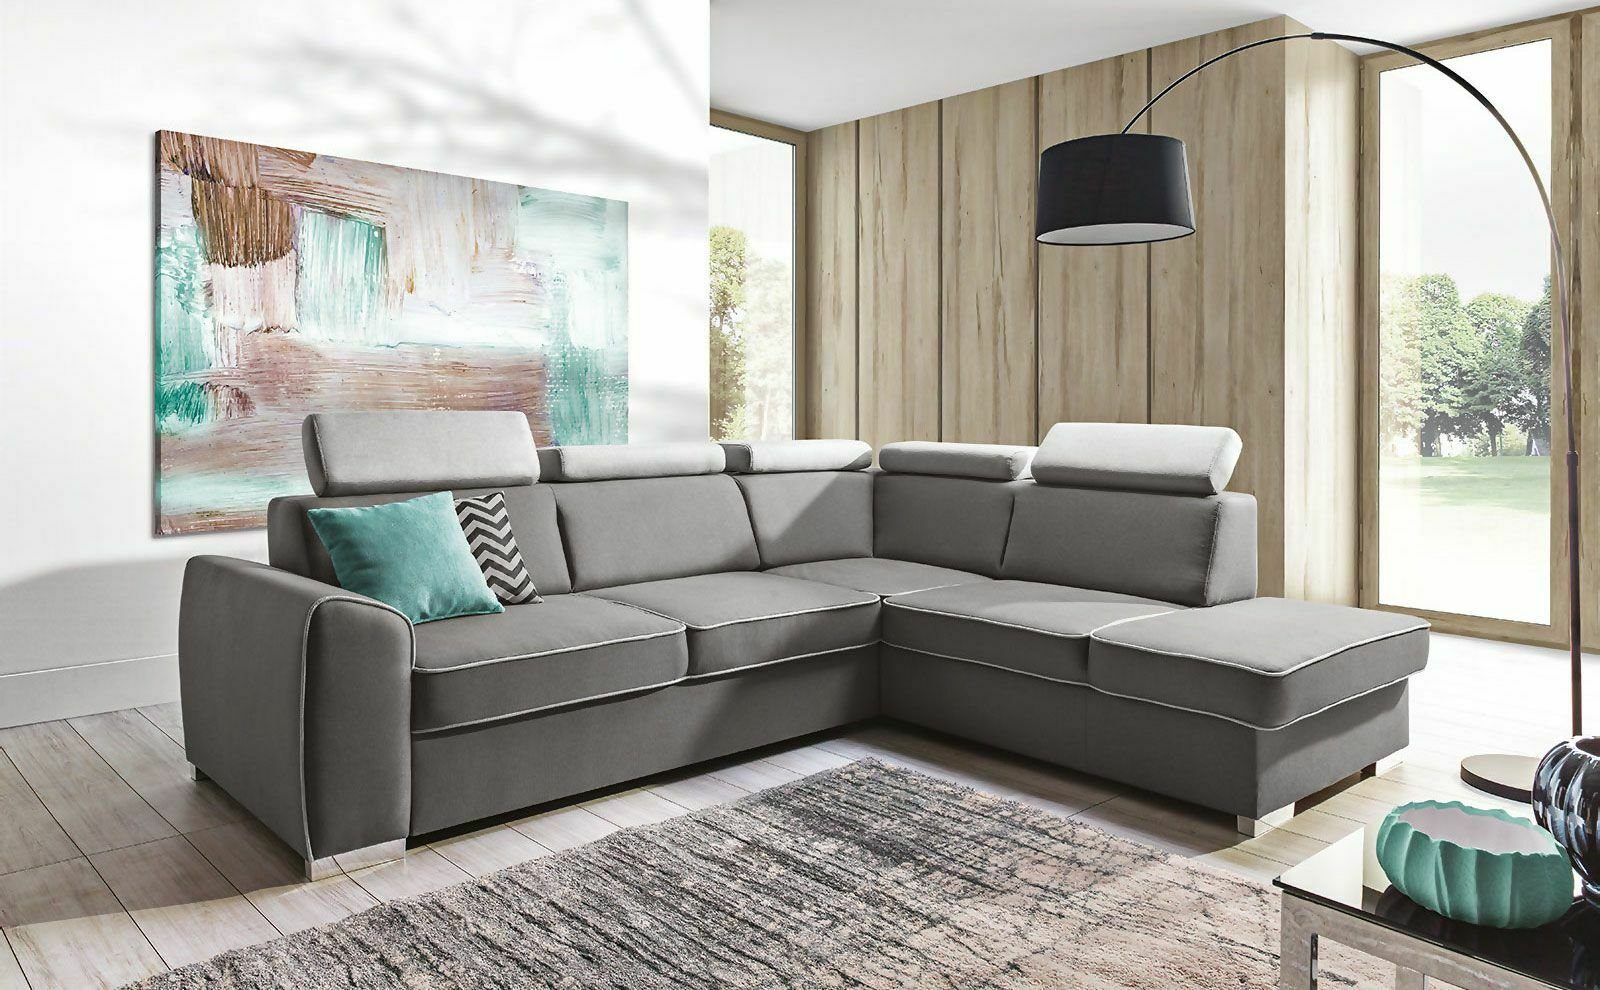 Ecksofa in Europe Made JVmoebel Graues Bettfunktion Luxus Sitzecke, Polster Couch Möbel Ecksofa